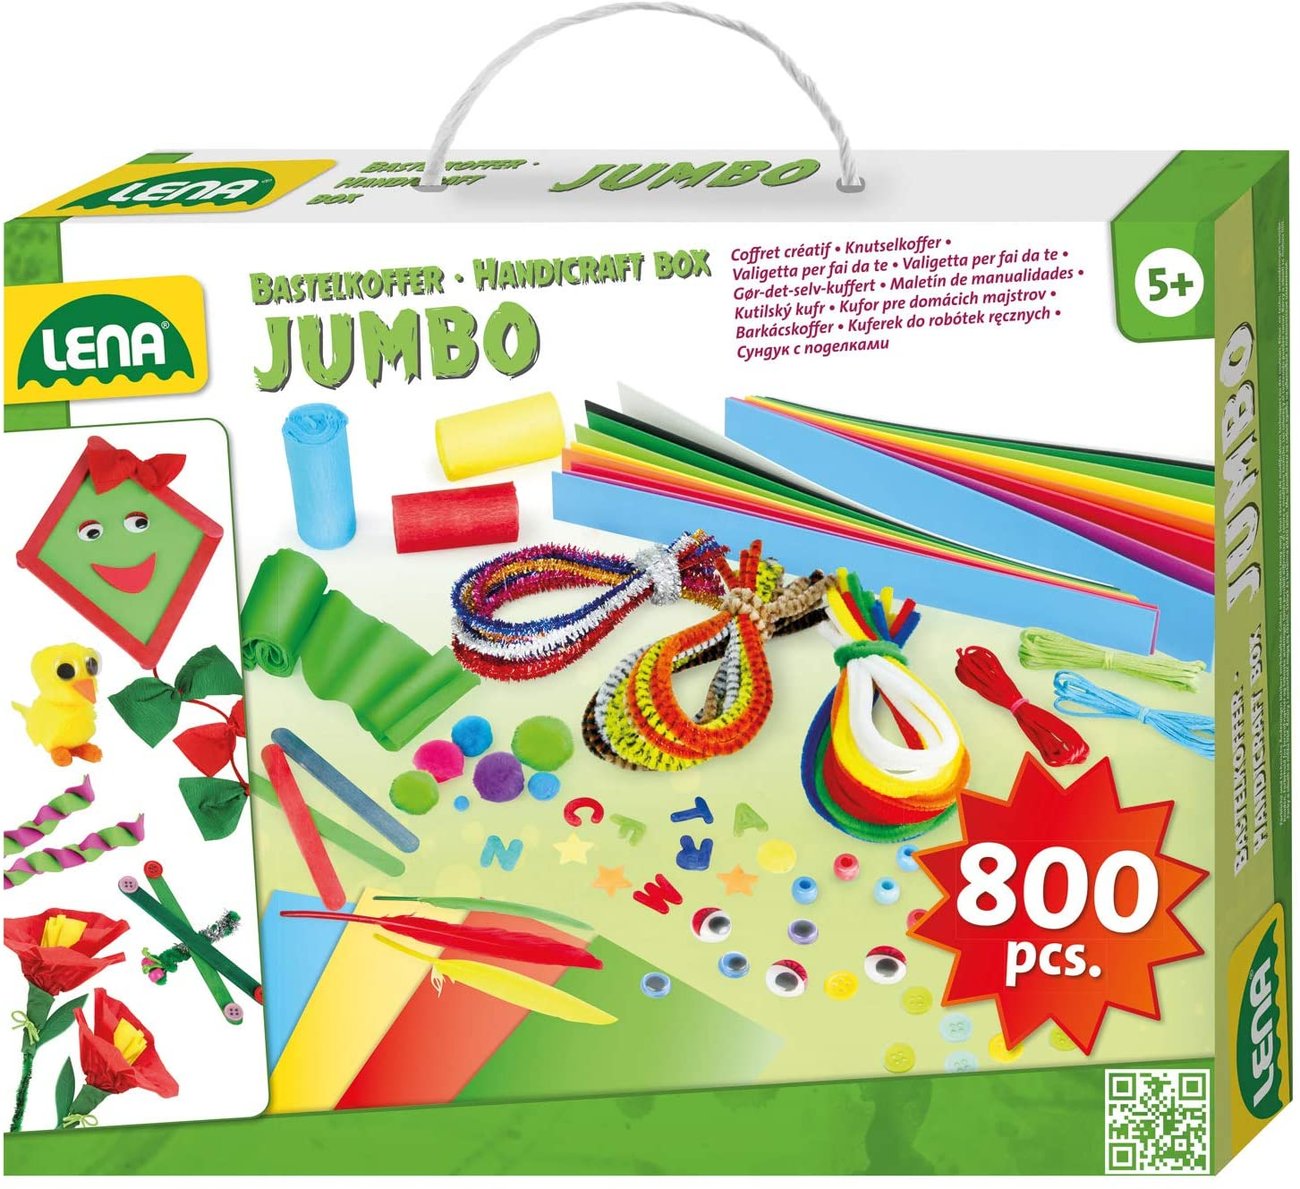 Bastelboxen für Kinder: Bastelbox Jumo von lena